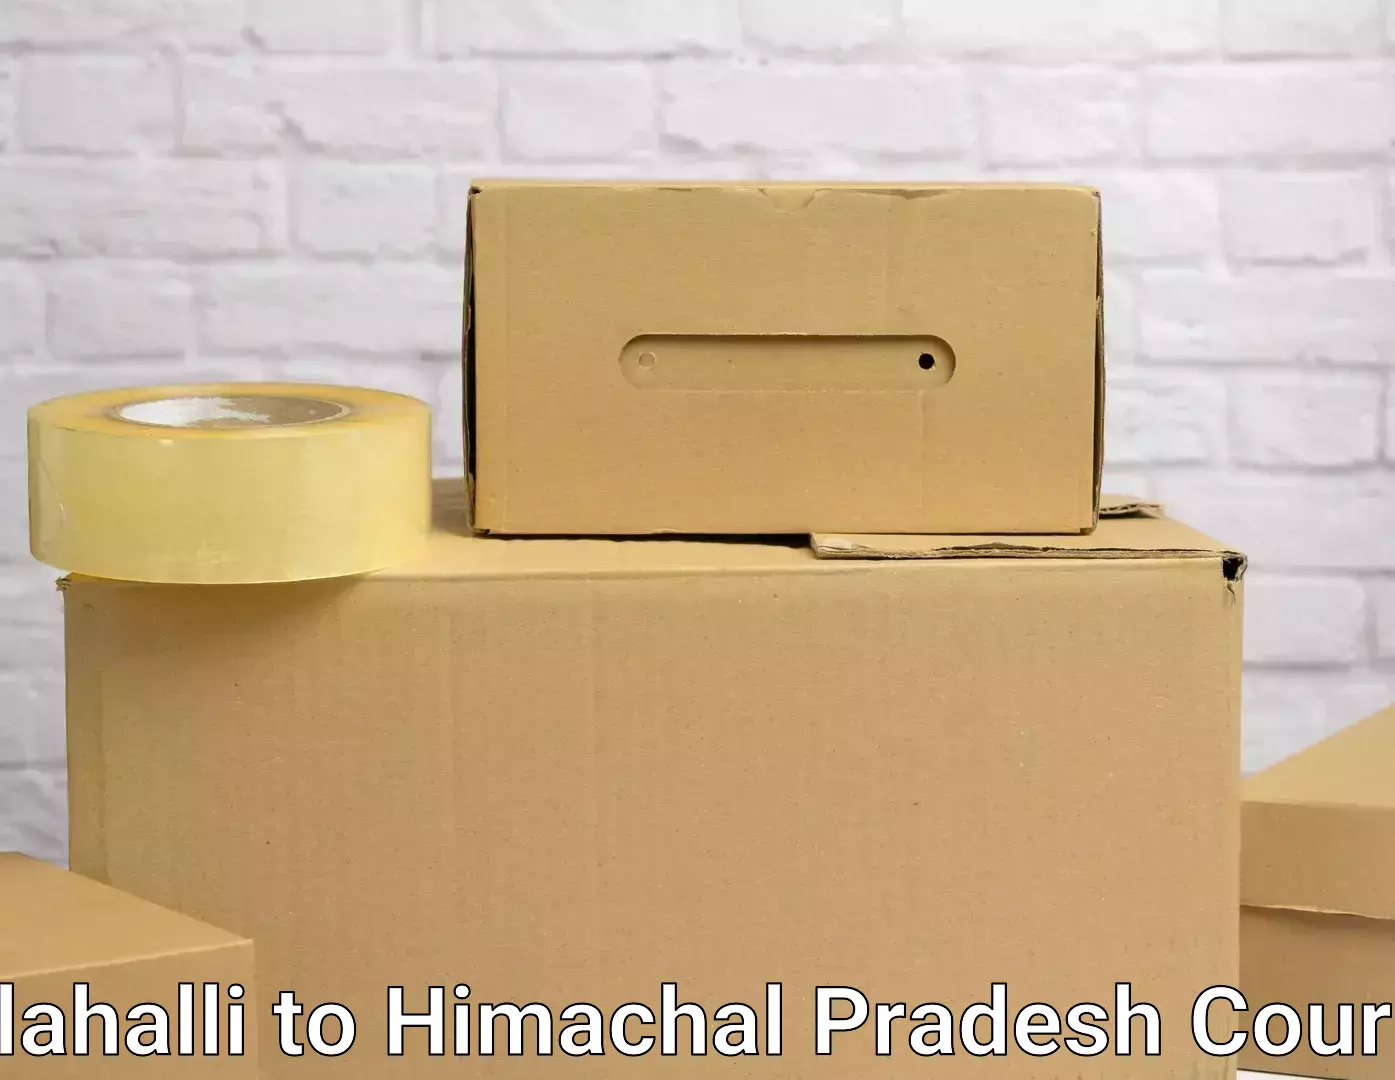 Expert goods movers Jalahalli to Himachal Pradesh